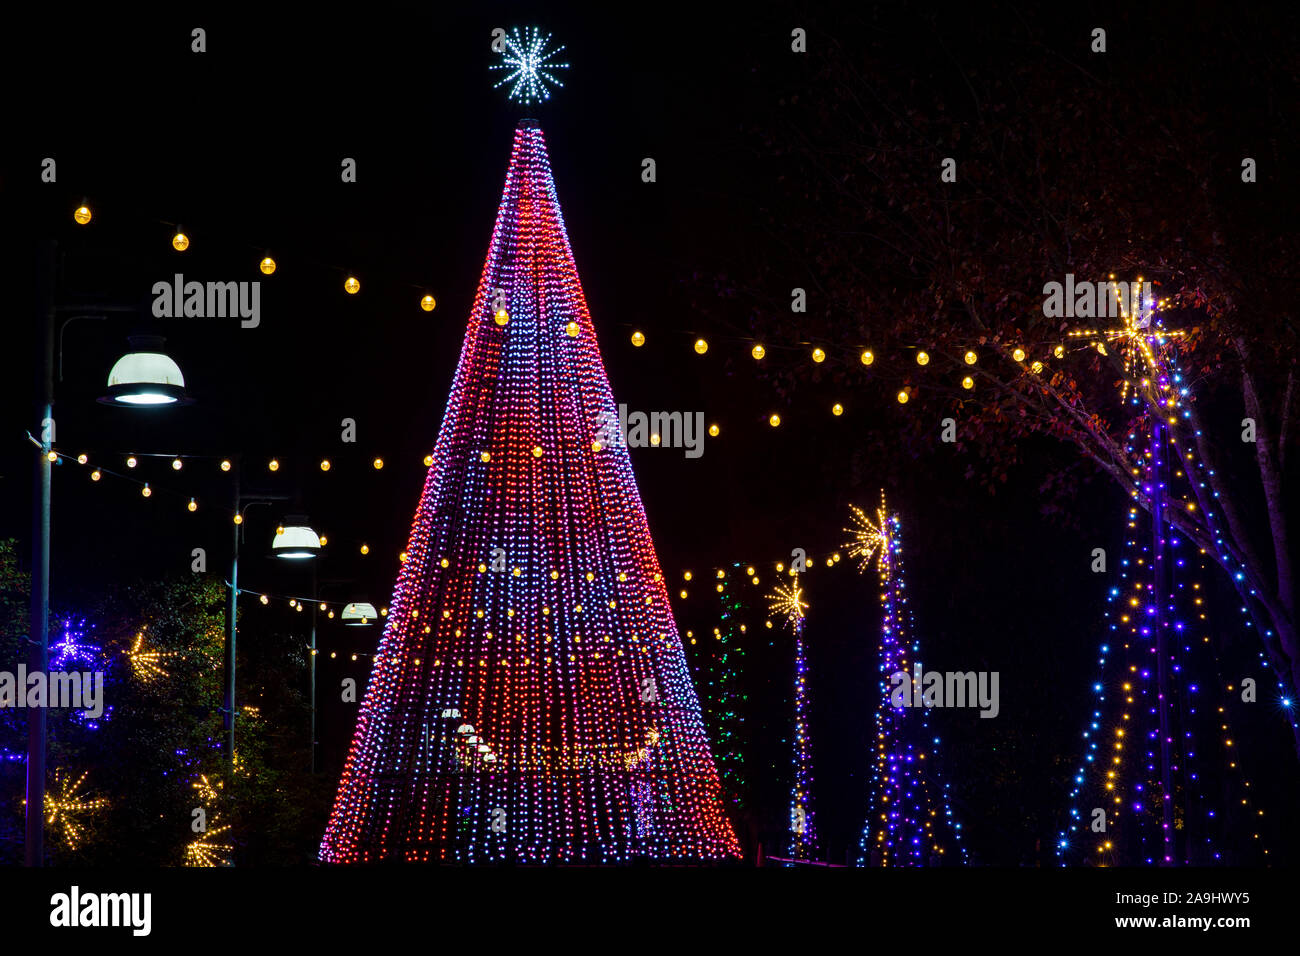 Beleuchtete Weihnachtsbaum im Winter Lights Event an der North Carolina Arboretum - Asheville, North Carolina, USA Stockfoto